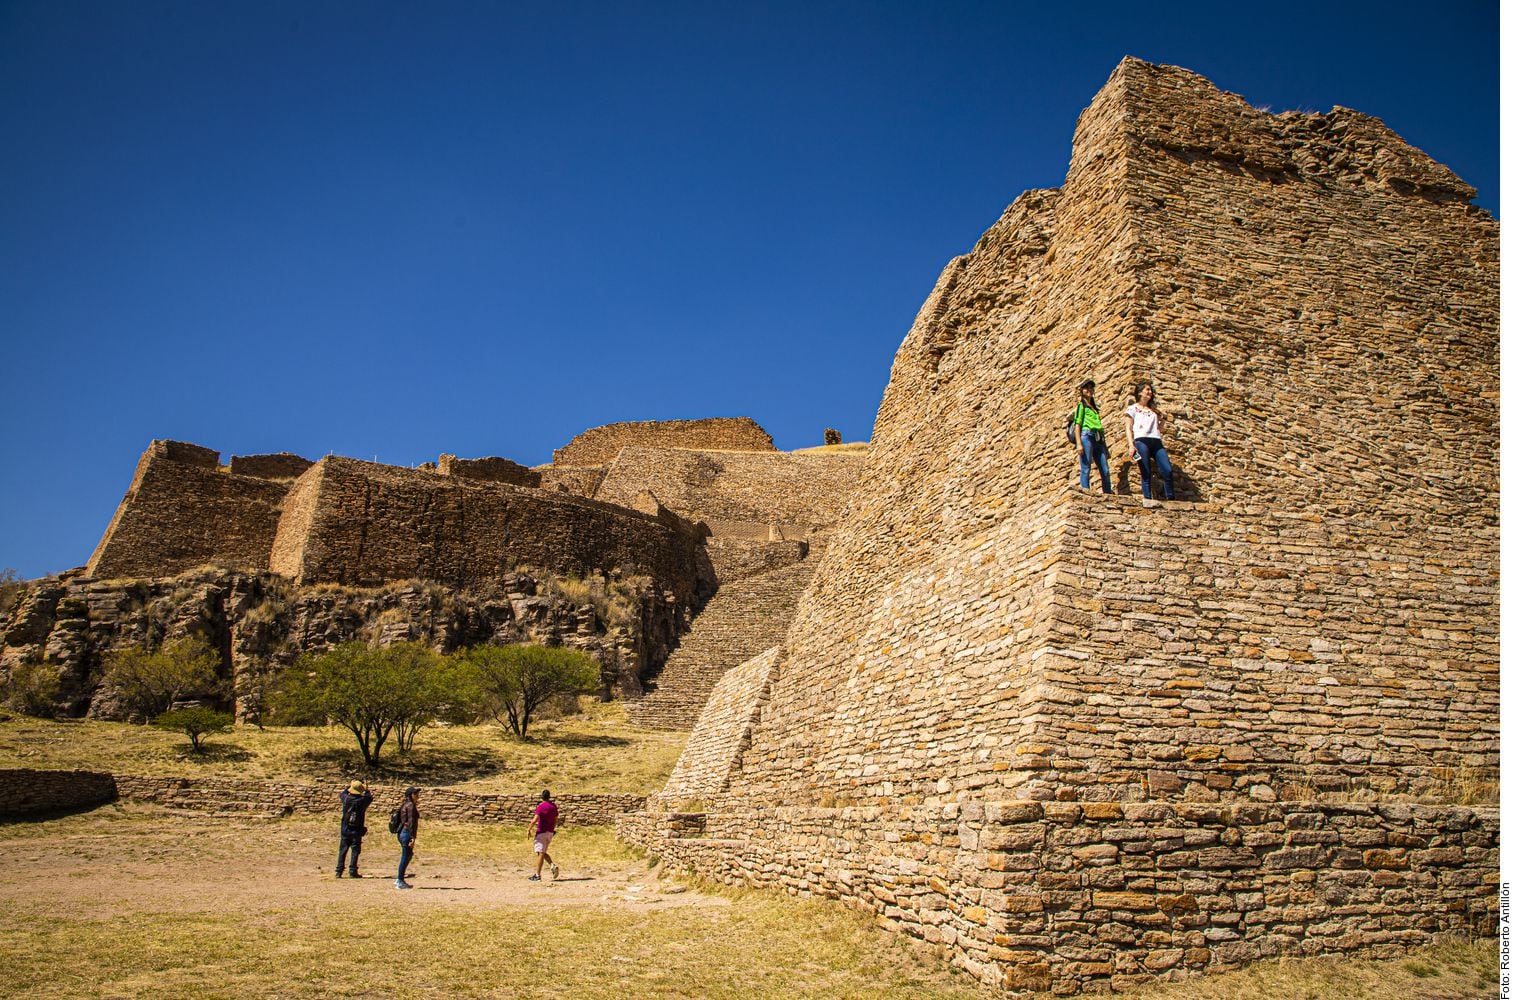 Si viajar a una zona arqueológica con el fin de recargar energía forma parte de los gustos de un trotamundos, La Quemada, en Zacatecas, es un buen punto al que se puede acudir.